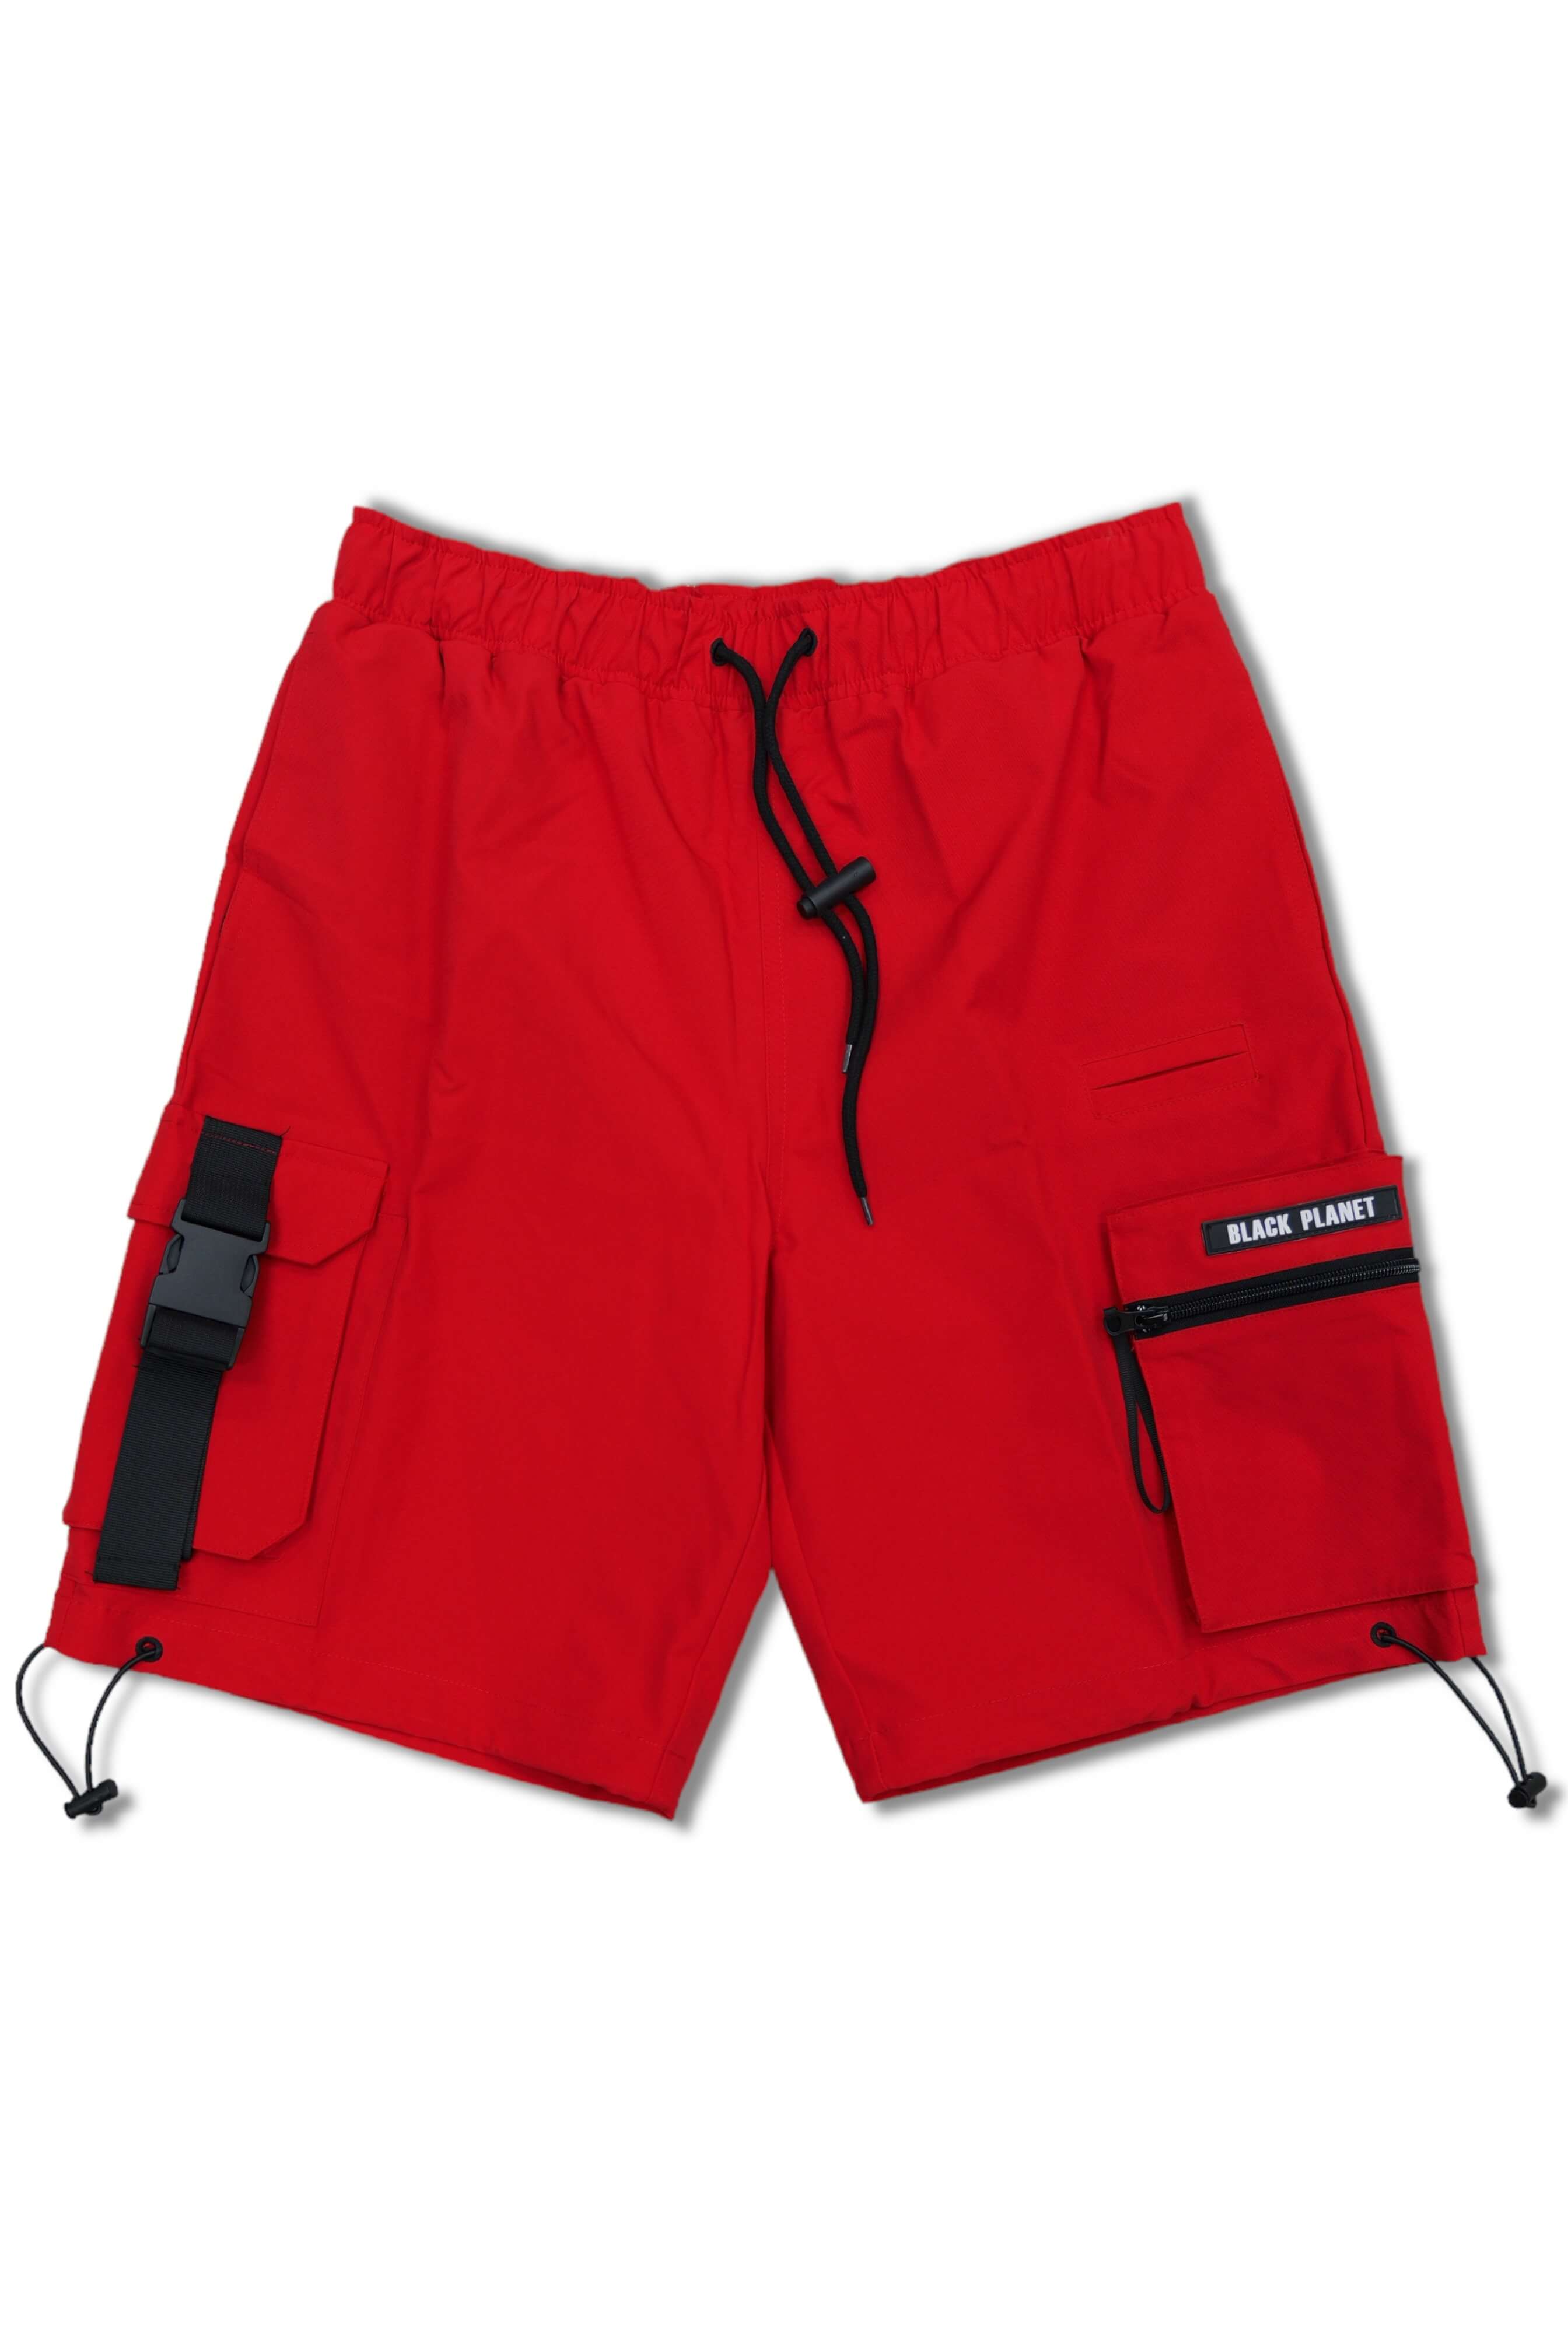 Nylon Red Shorts